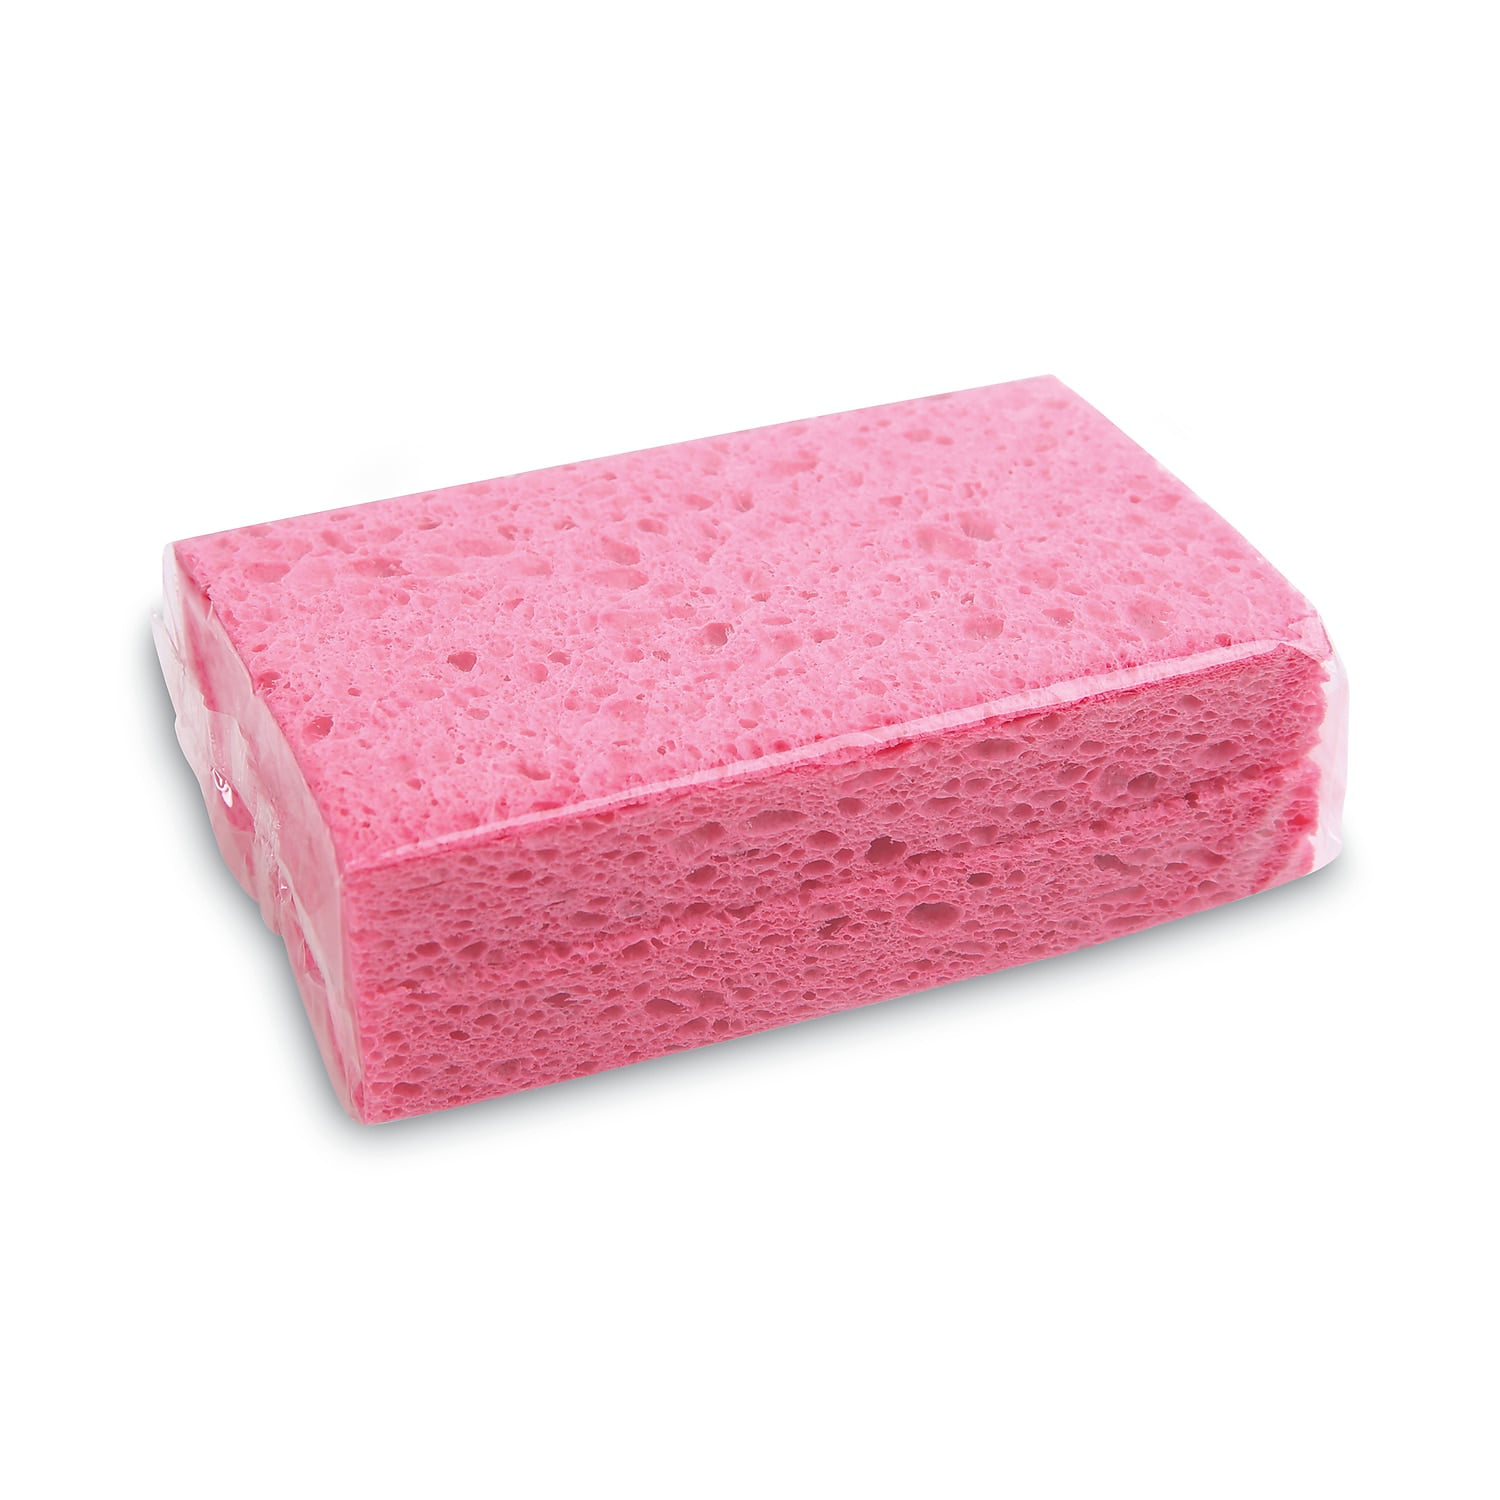 48 Bulk Sponges (3 Pcs)